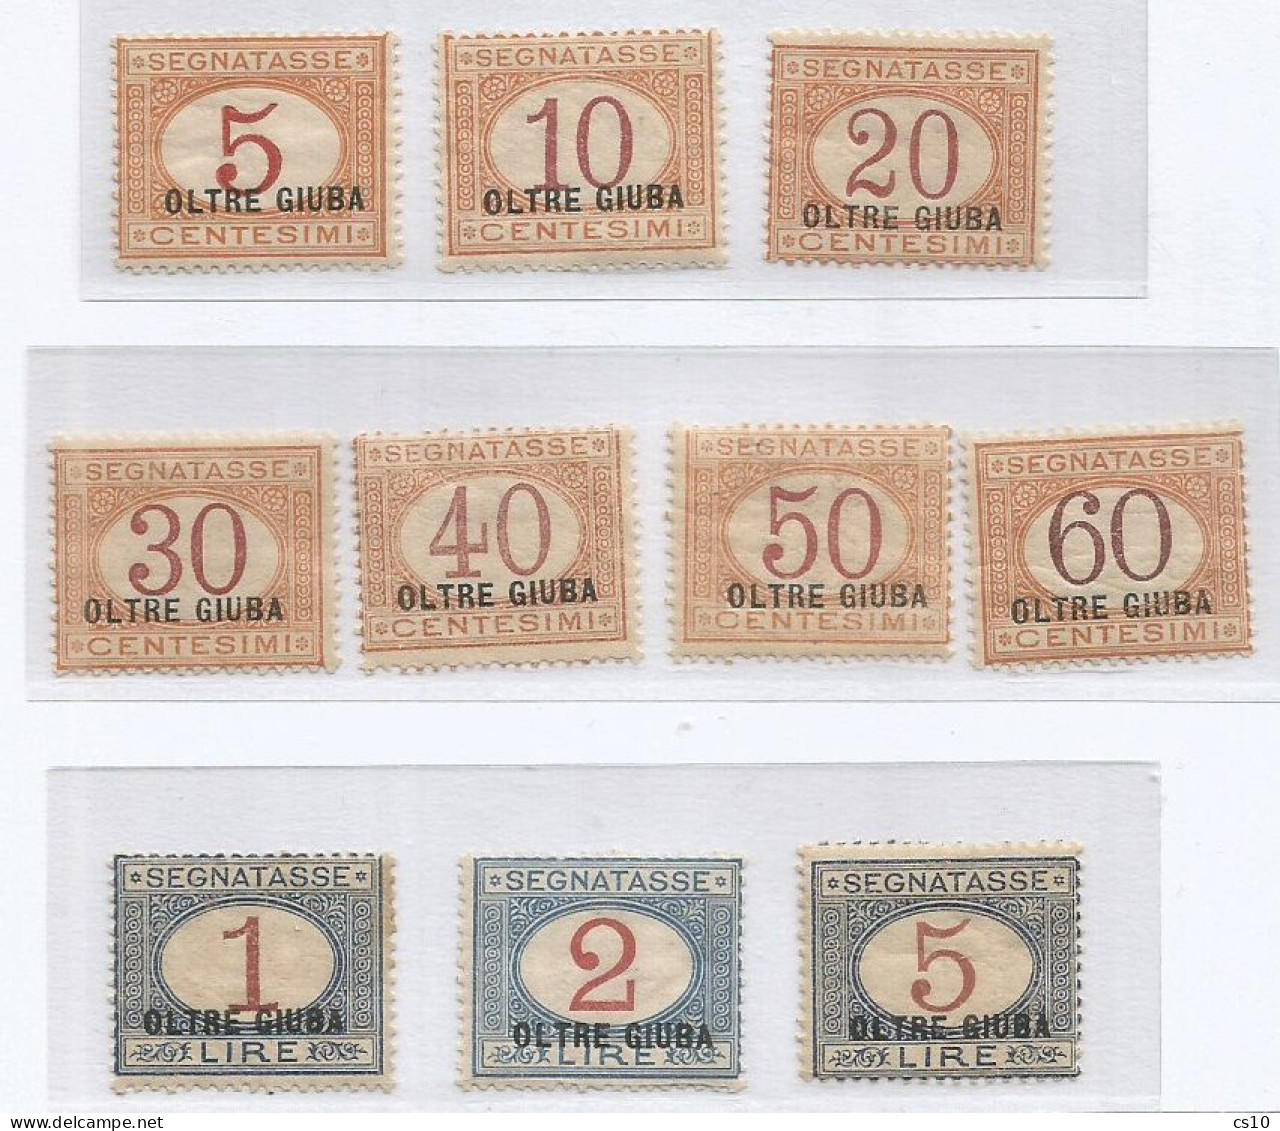 Oltre Giuba Outre Djuba Italy Colony 1925 Segnatasse Postage Due 1/10 MLH *TL Cpl 10v Set - Lotti E Collezioni